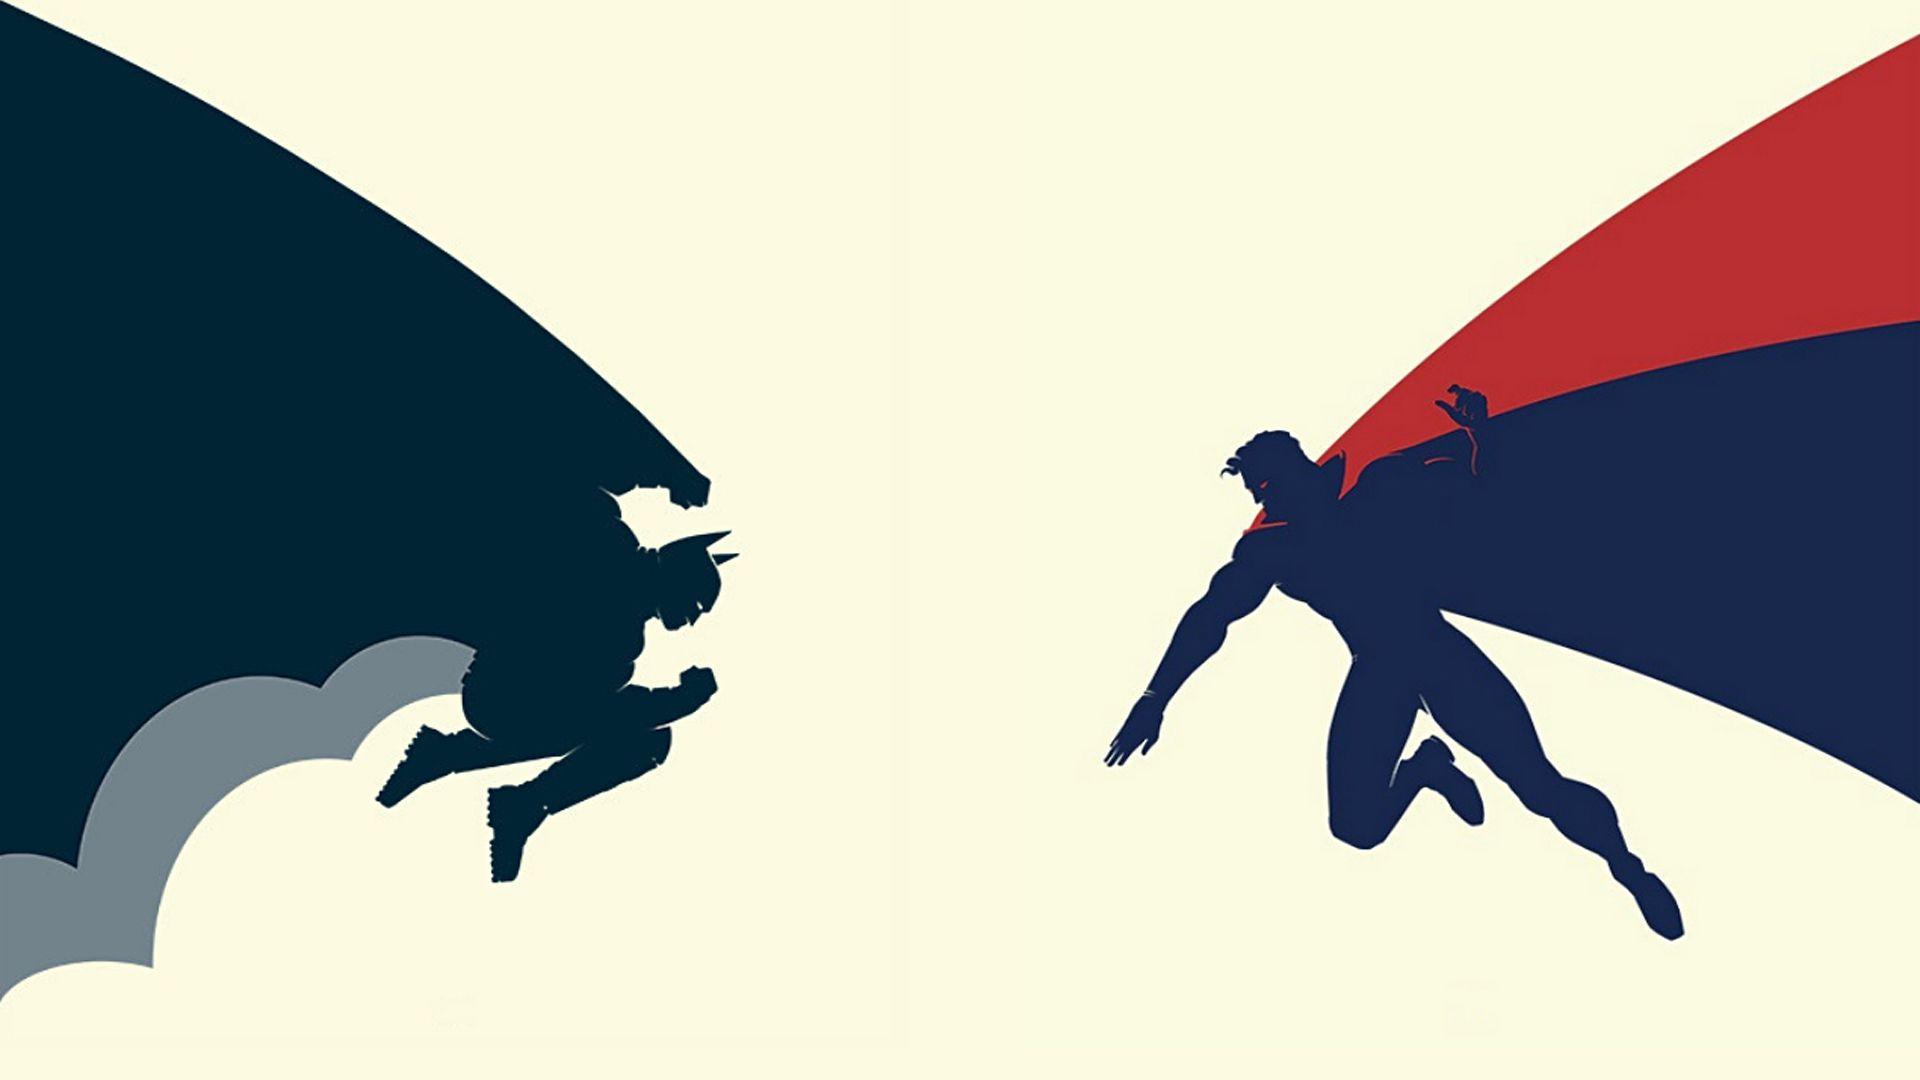 Batman vs Superman Wallpaper HD